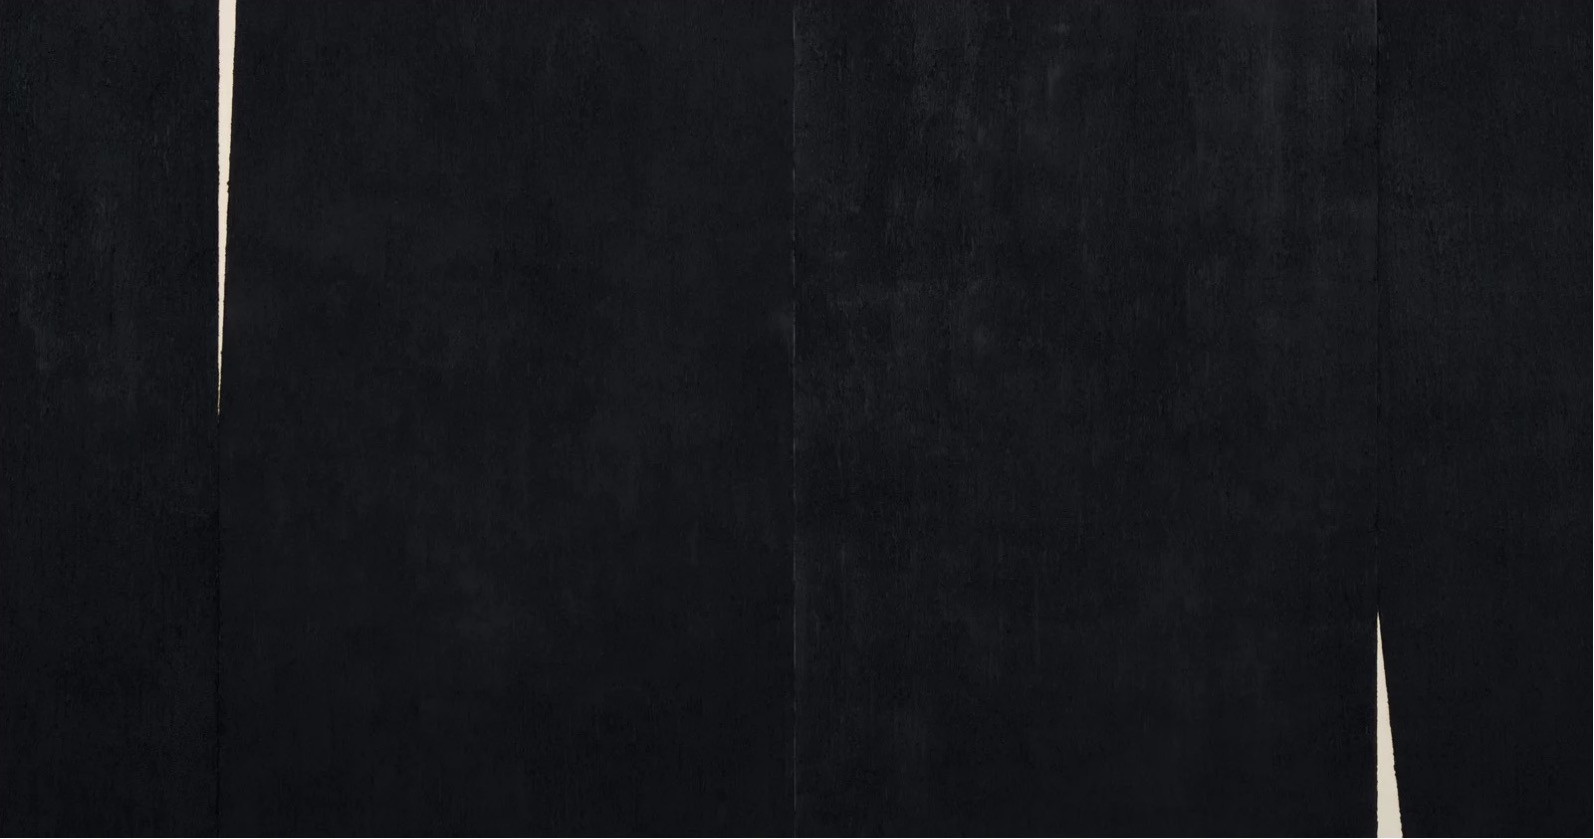 Richard Serra,David Zwirner